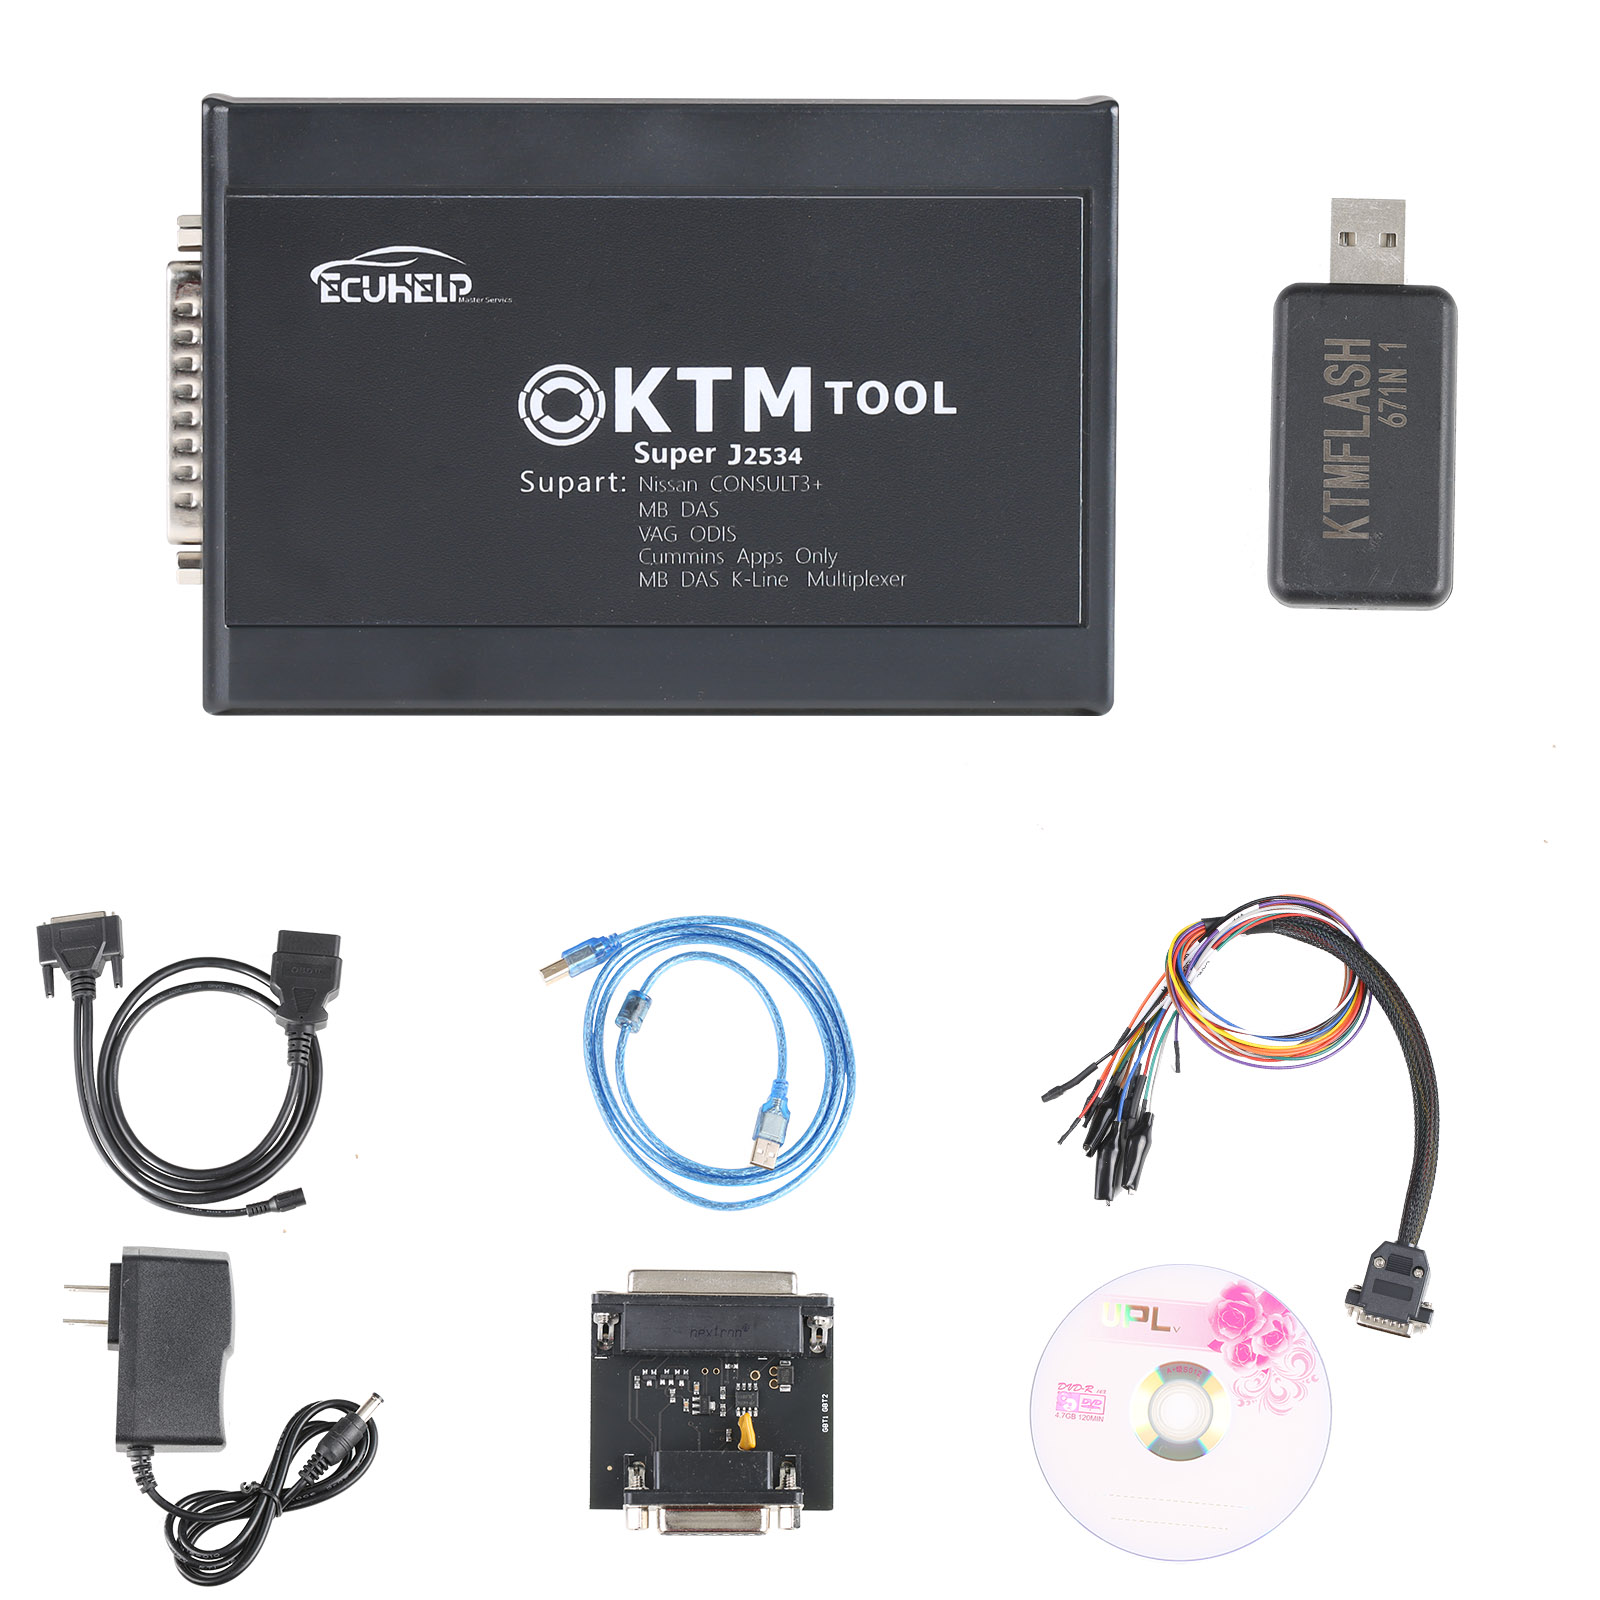 KTM200 KTM tool ECU Programmer 67 Modules in 1 V1.20 Update Version of KTM100